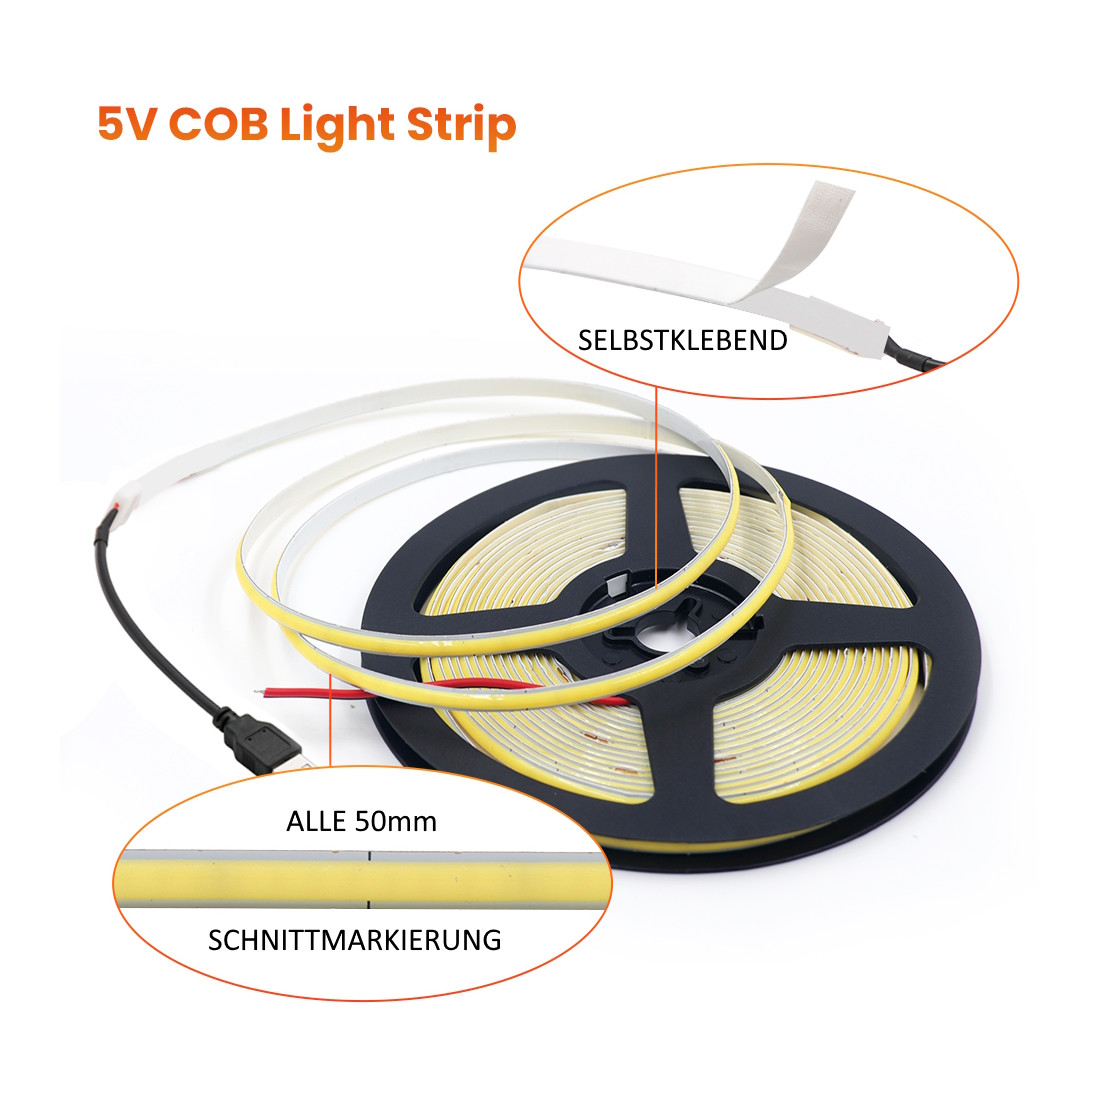 Dimmbare COB LED Streifen, 5V, 320LEDs, 1m I RC-HANGAR15, 7,99 €